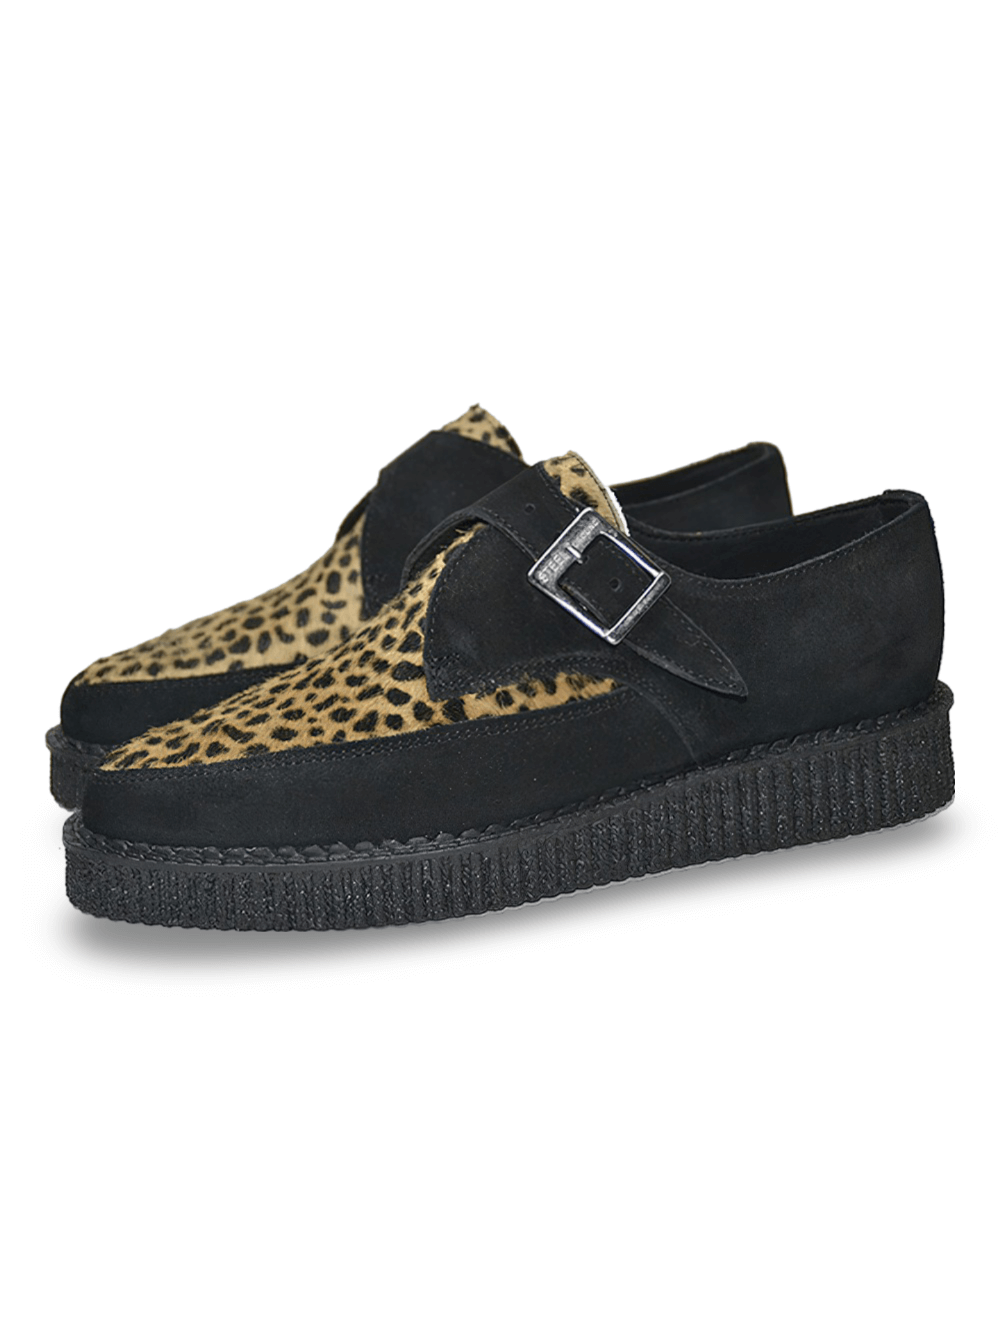 Zapatos creeper unisex con cordones en negro y leopardo